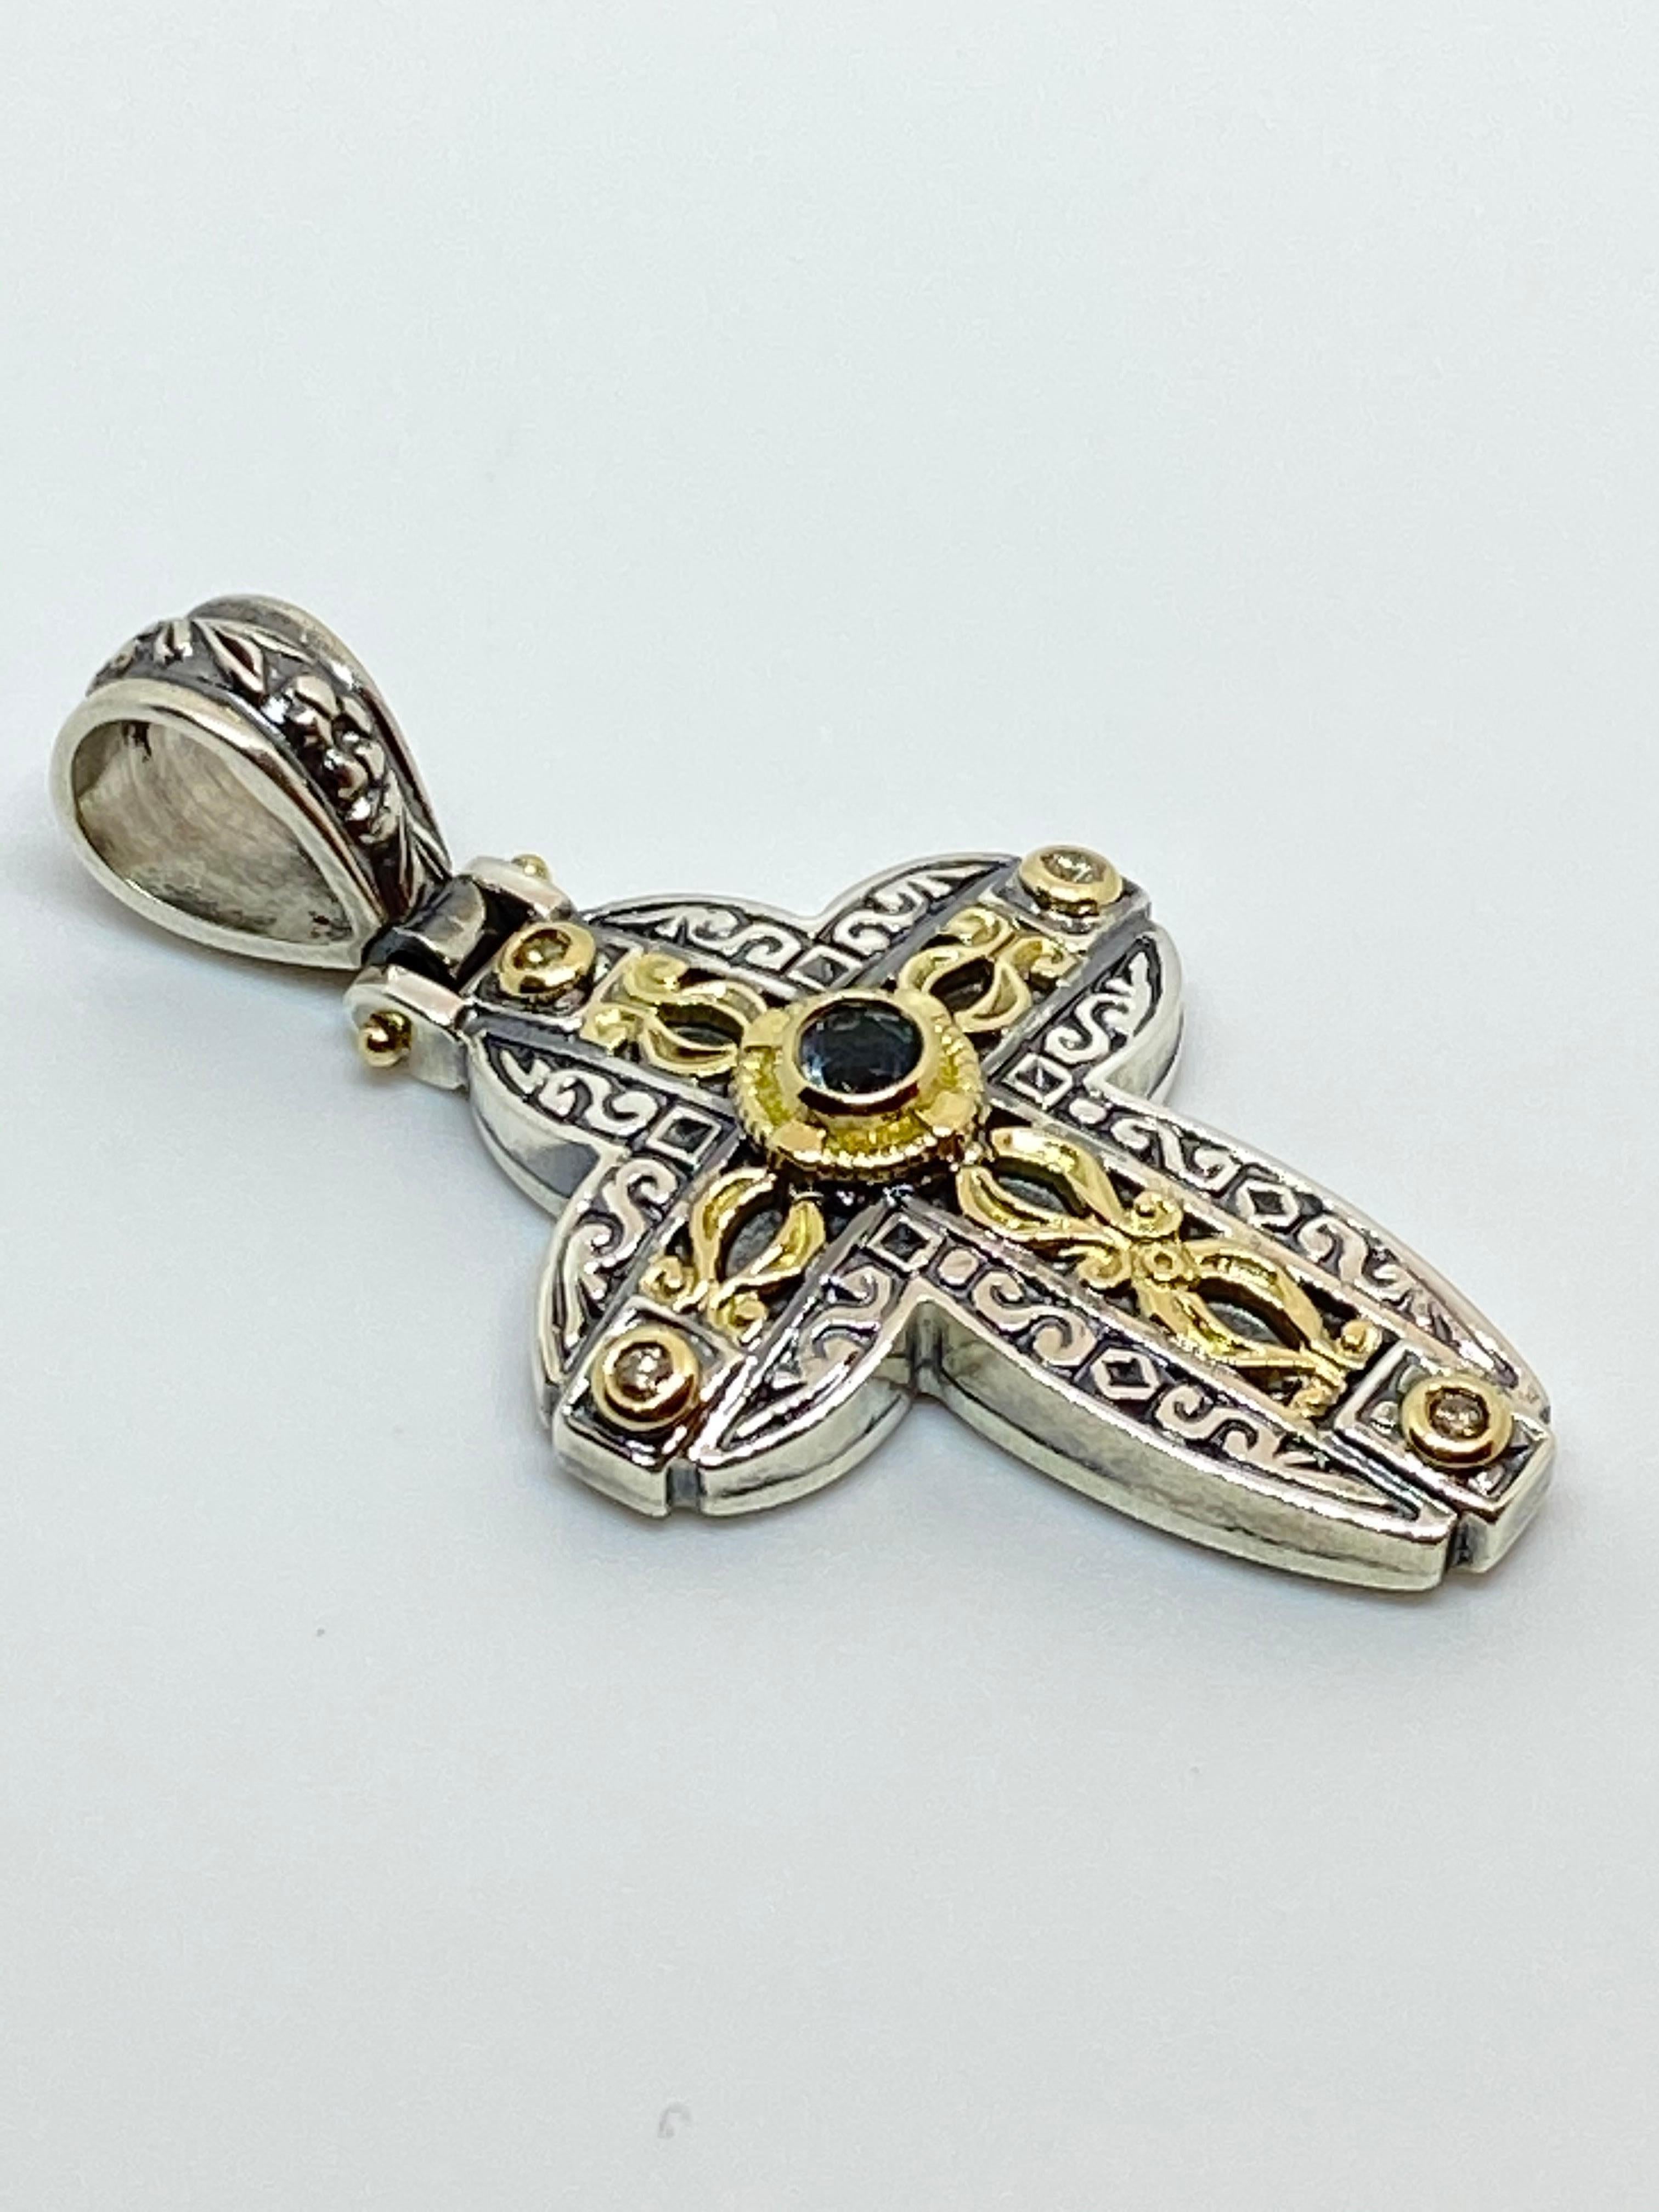 Le pendentif Croix bicolore en argent et or 18 carats de S.Georgios est fabriqué à partir de pièces d'or jaune 18 carats incrustées pour créer un look unique. Ce magnifique rehausseur de croix comporte 4 diamants d'un poids total de 0,12 carat et un